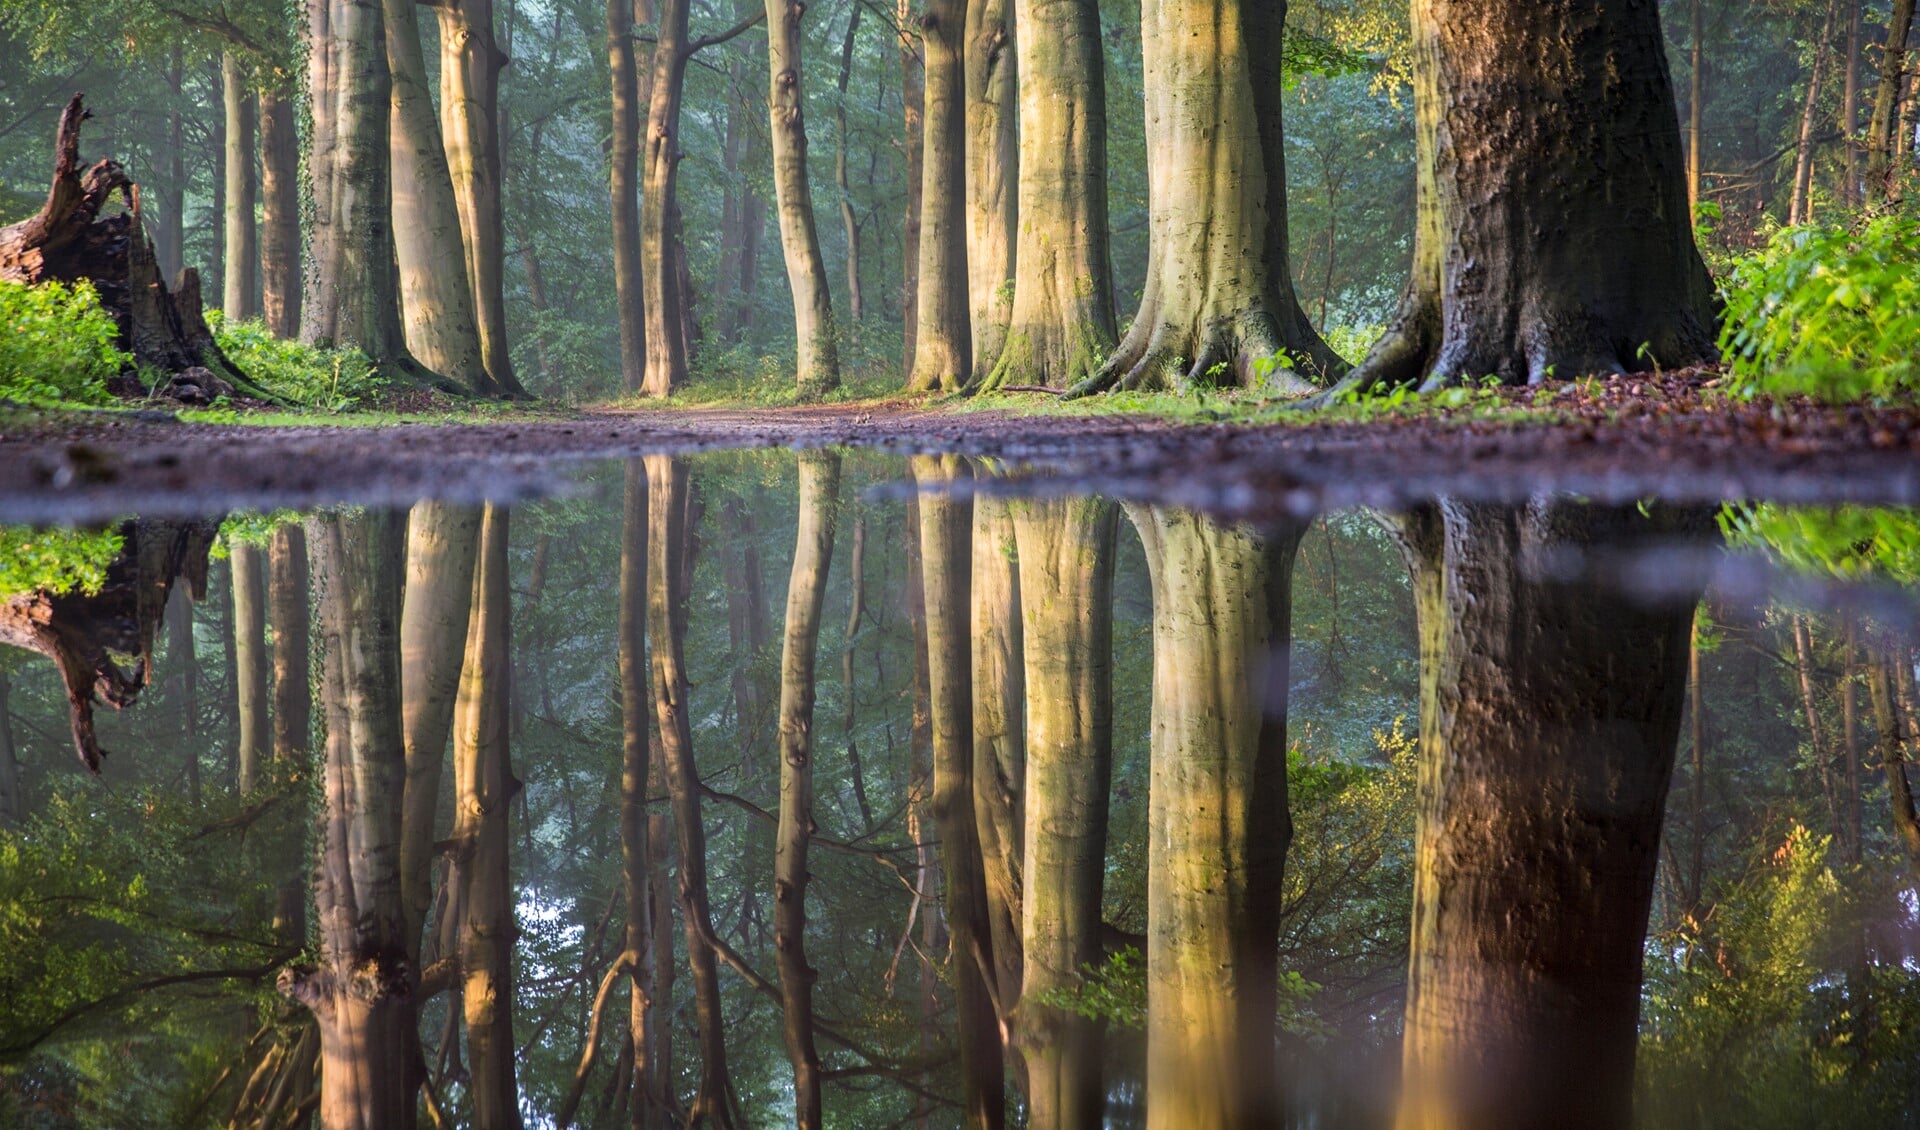 Landschapsfotograaf Frans Lemmens legde een oud bos in het Spanderswoud op deze manier vast.